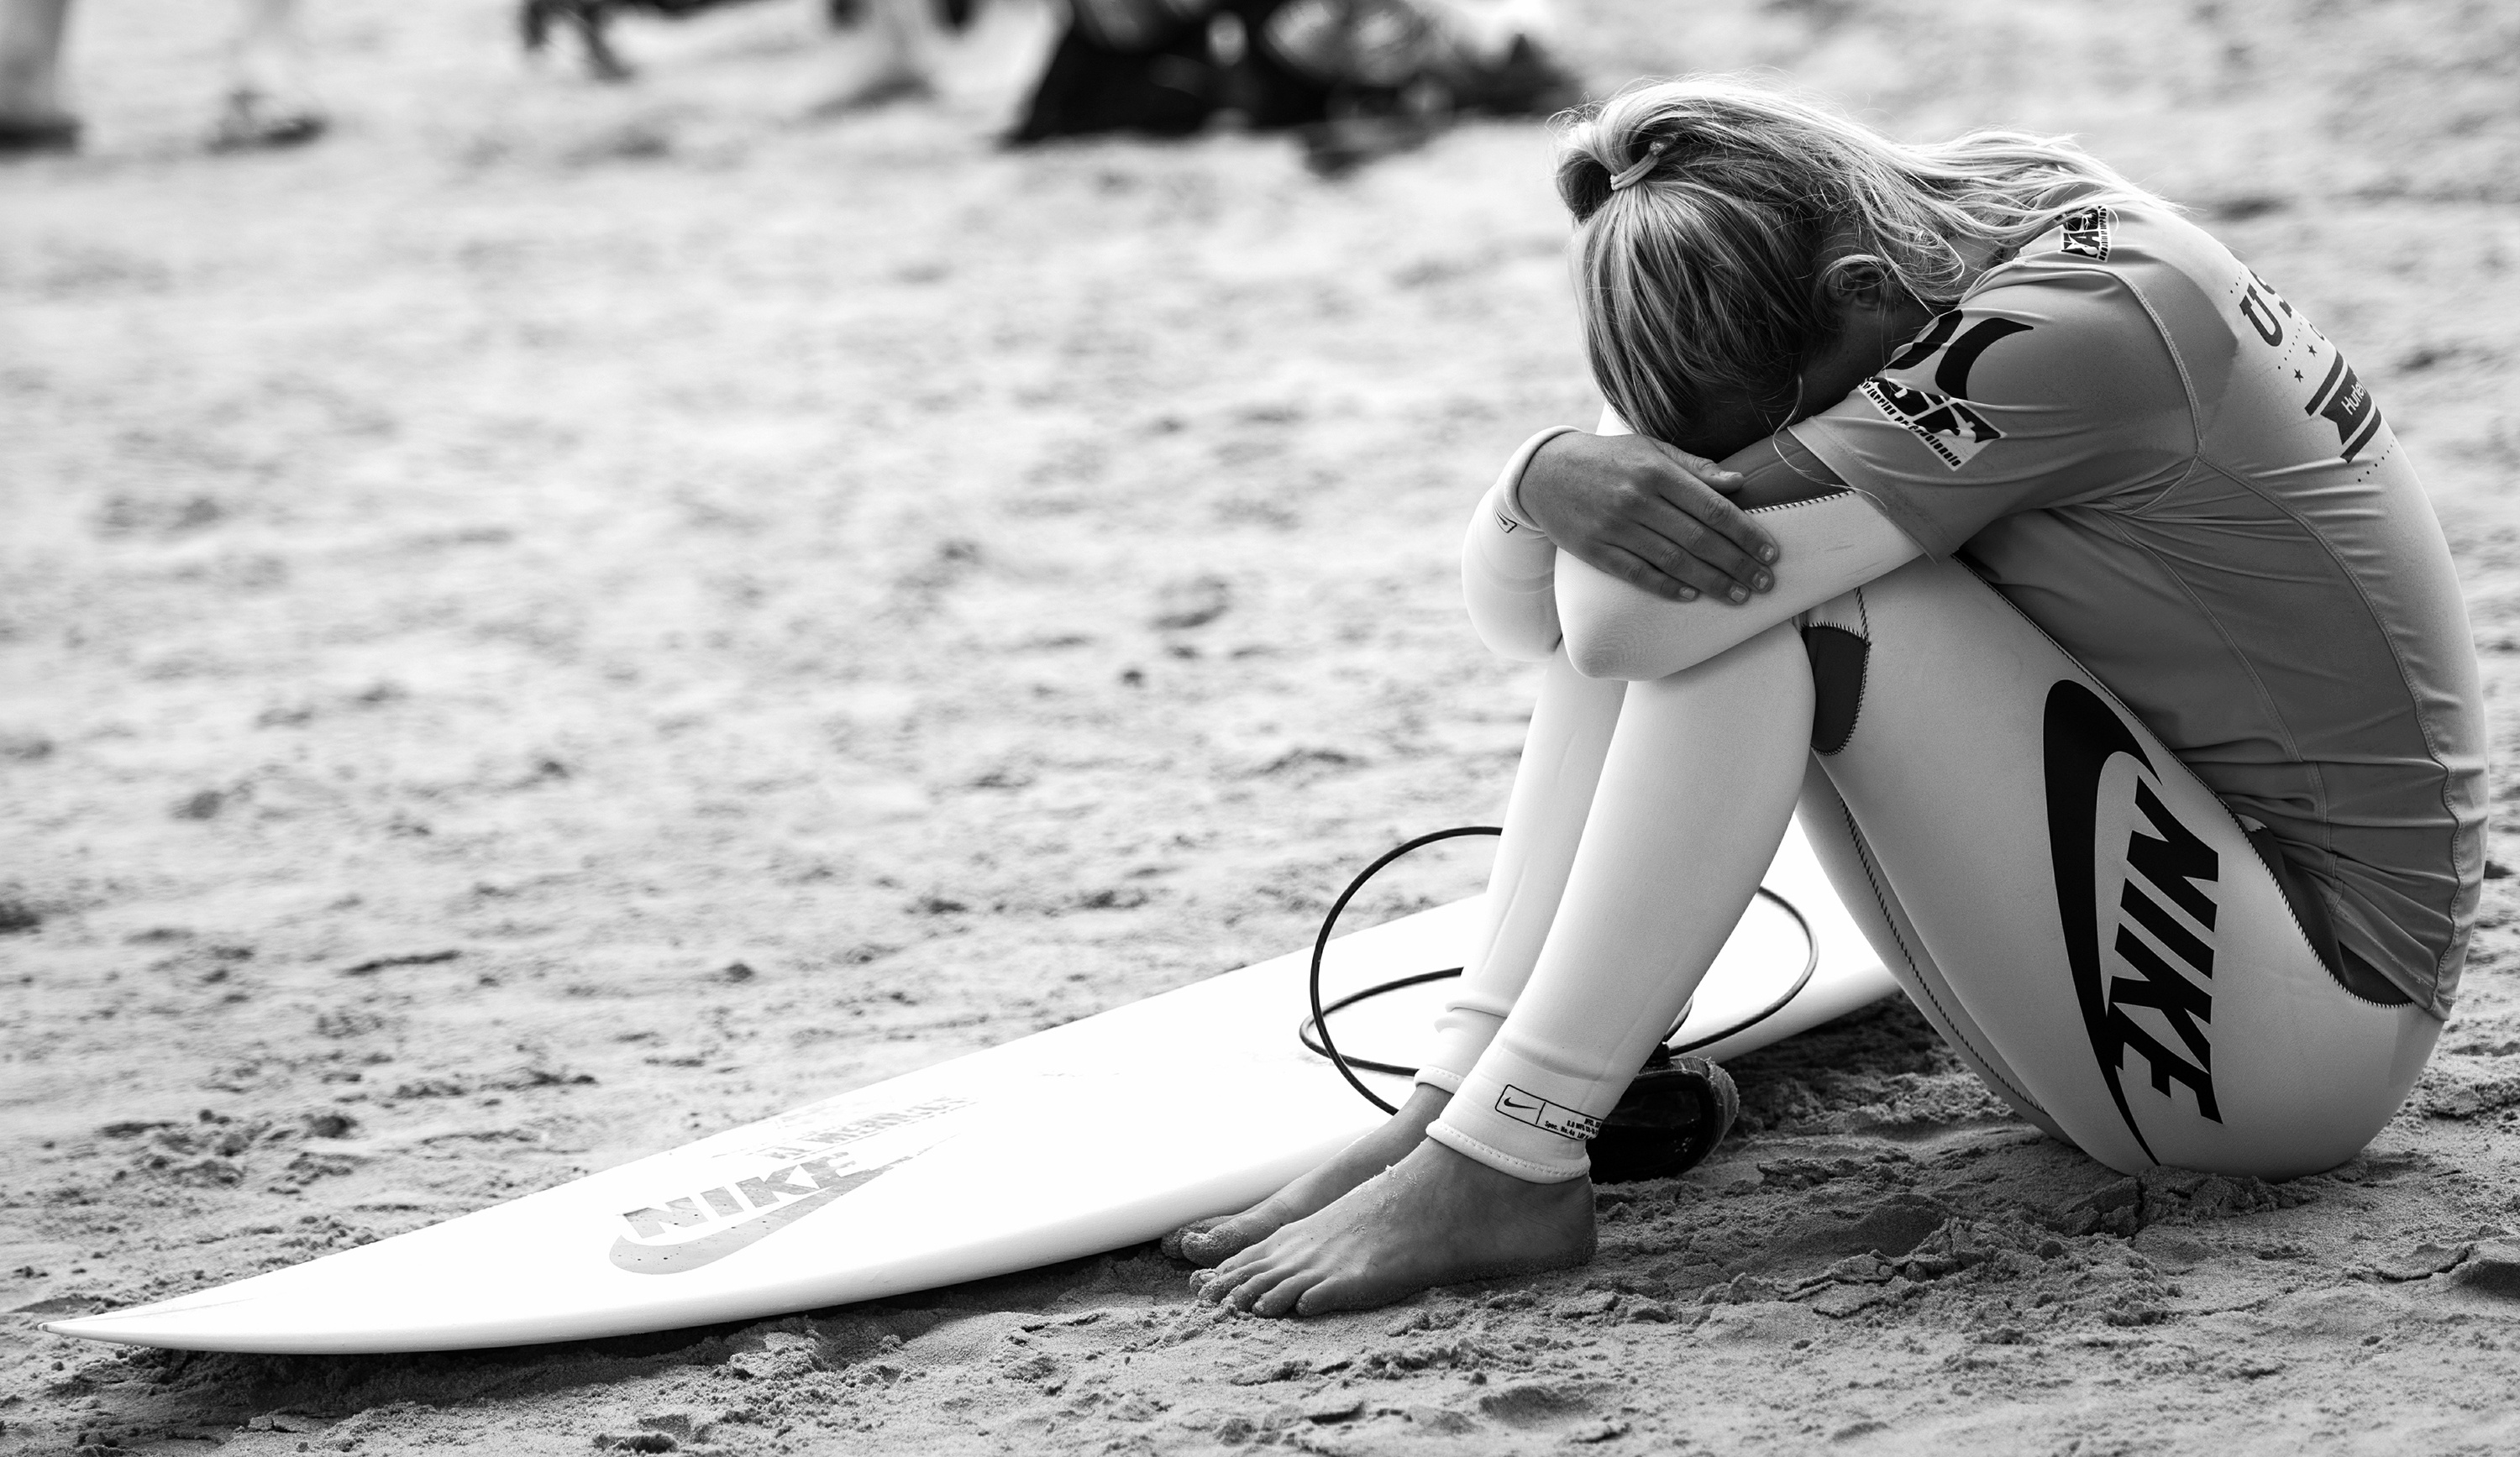 Nike Girl Surfboard in Beach Wallpaper